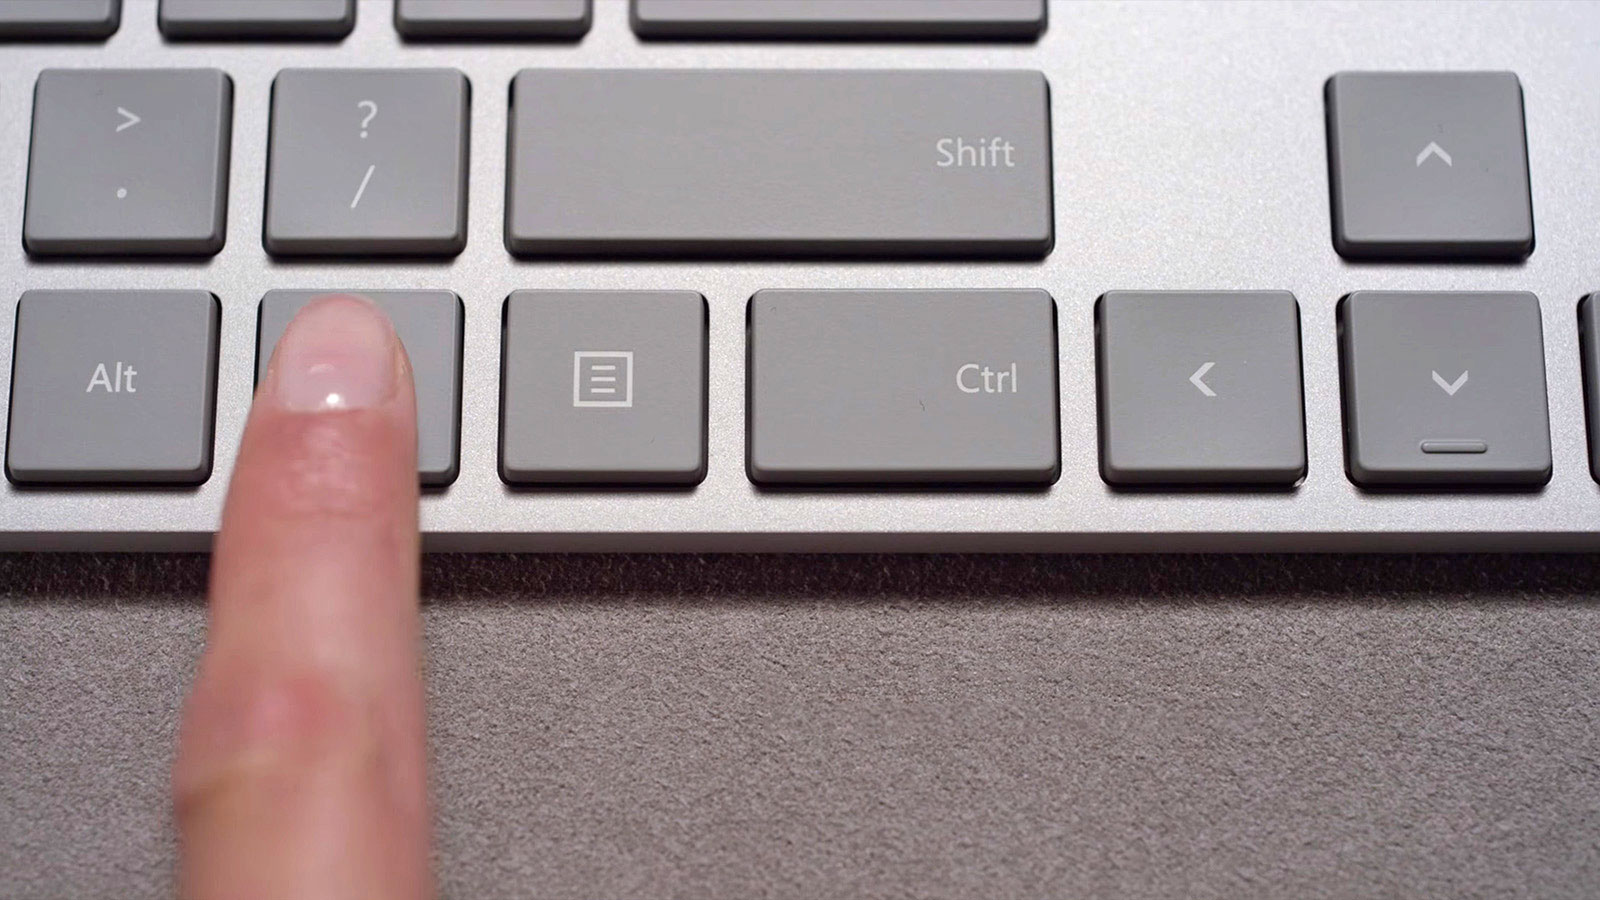 米マイクロソフト Modern Keyboard 指紋認証センサー付き 発表 タイピングを邪魔しない隠れセンサー搭載 Engadget 日本版